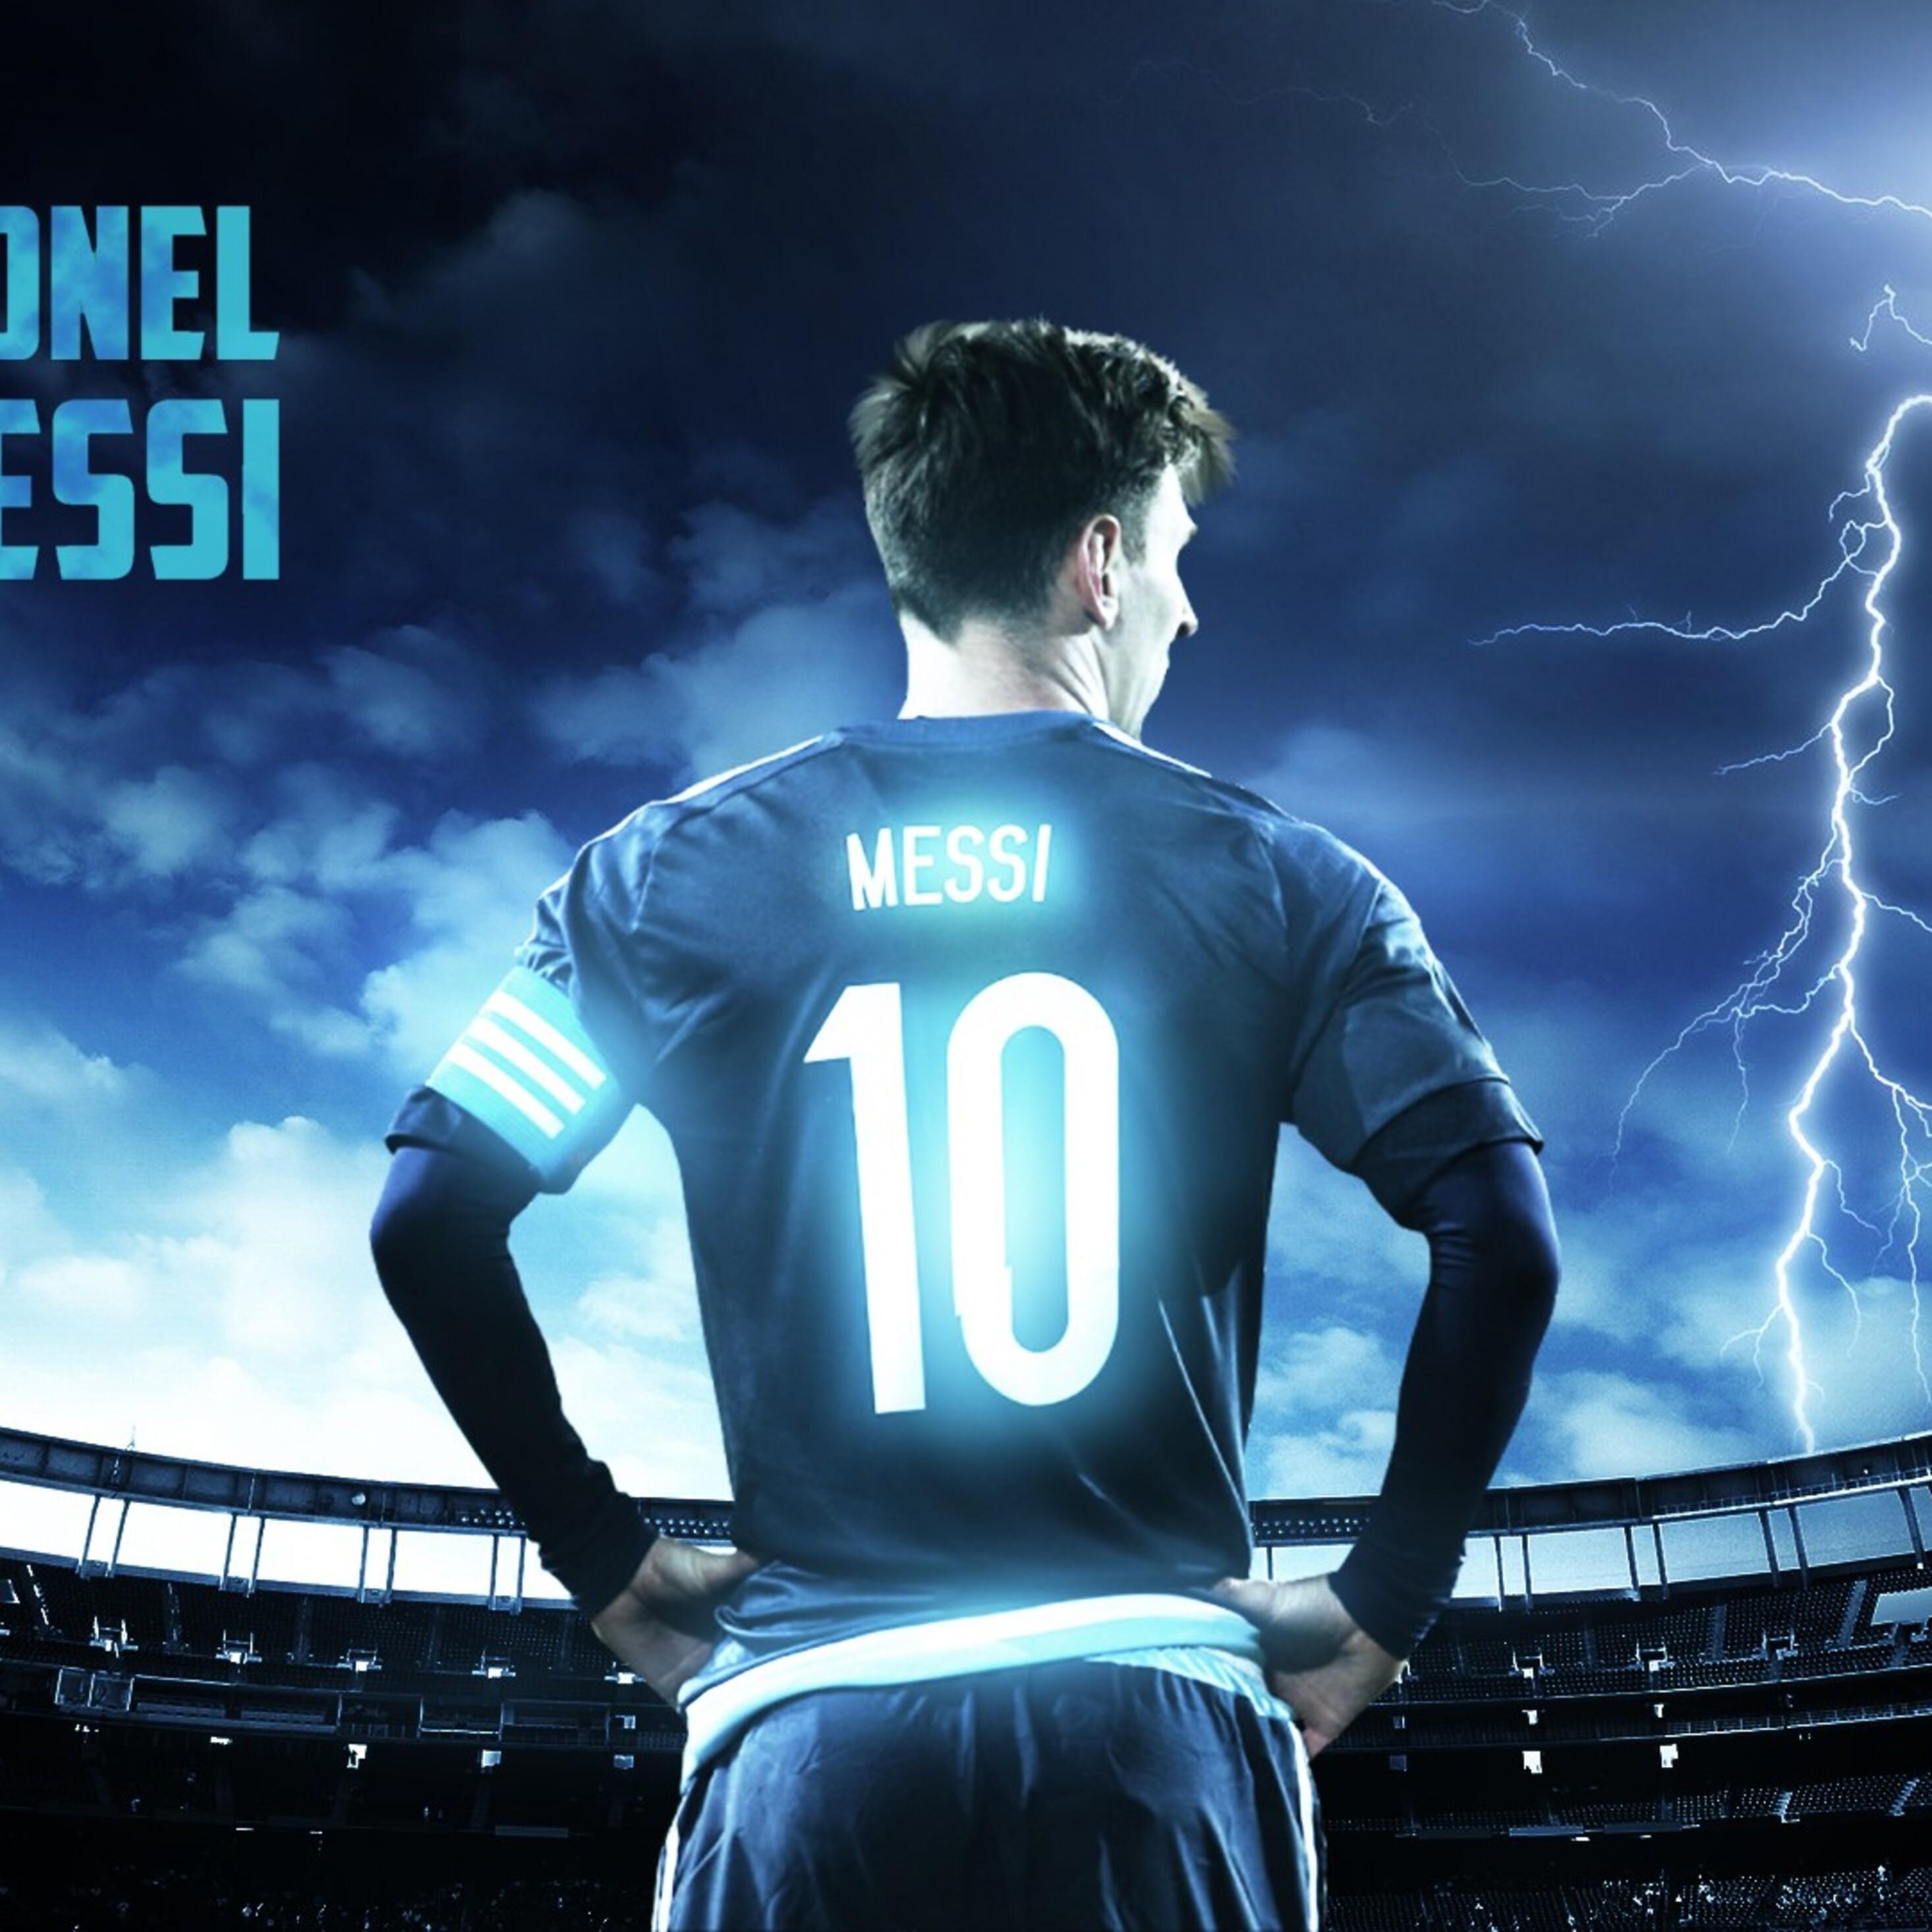 Lionel Messi Ipad Wallpapers: Đam mê bóng đá và Messi? Hãy nhanh tay tải về những hình nền cho đồng hồ iPad của Lionel Messi. Với thiết kế sáng tạo và độ phân giải cao, các tác phẩm nghệ thuật này sẽ mang đến trải nghiệm độc đáo cho người dùng.